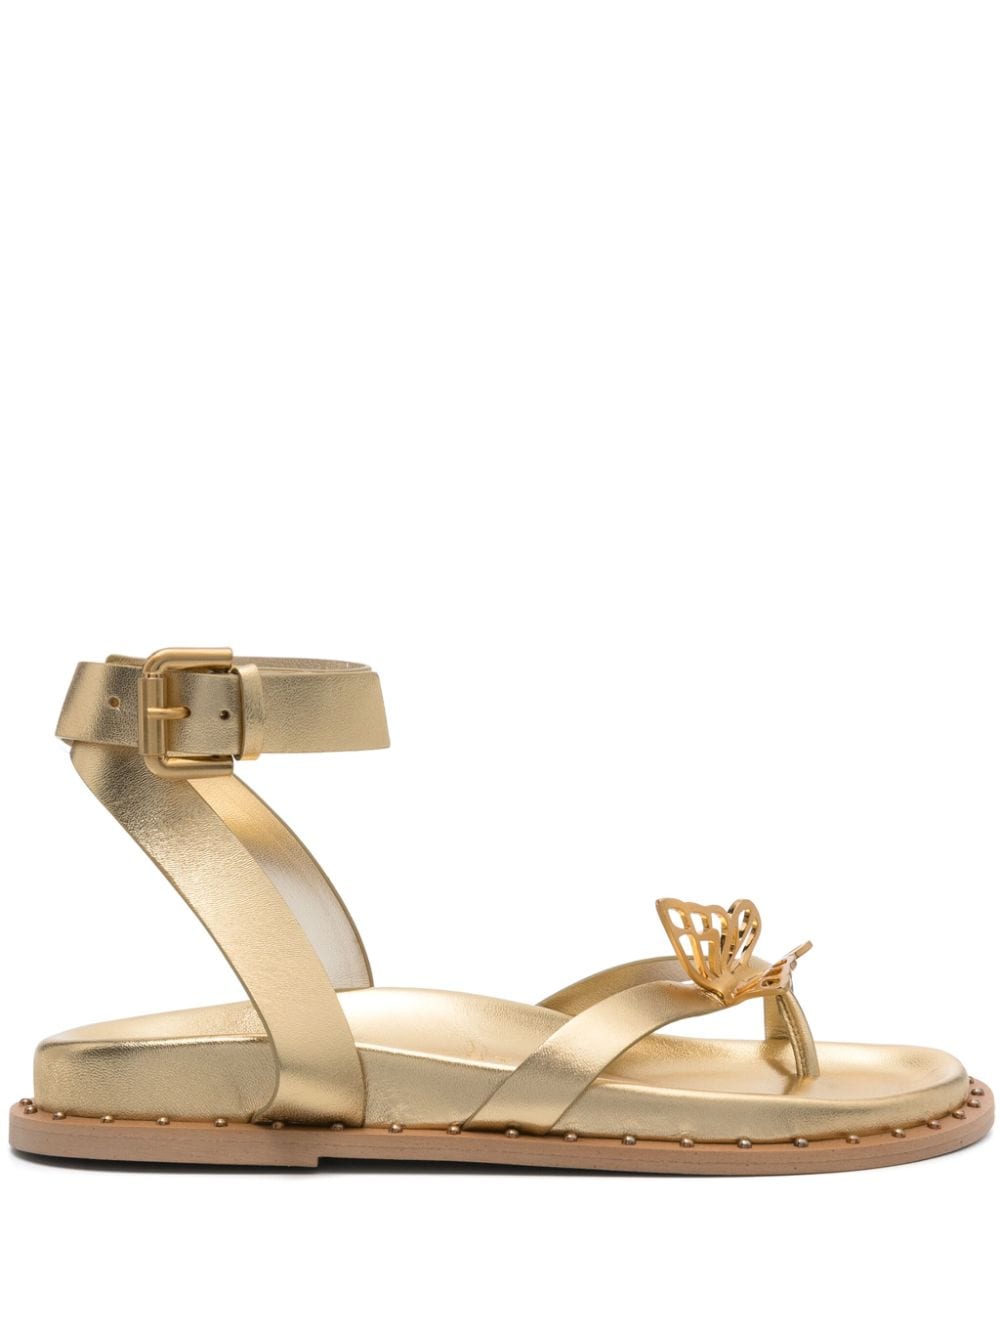 Sophia Webster Mariposa flat sandals - Gold von Sophia Webster